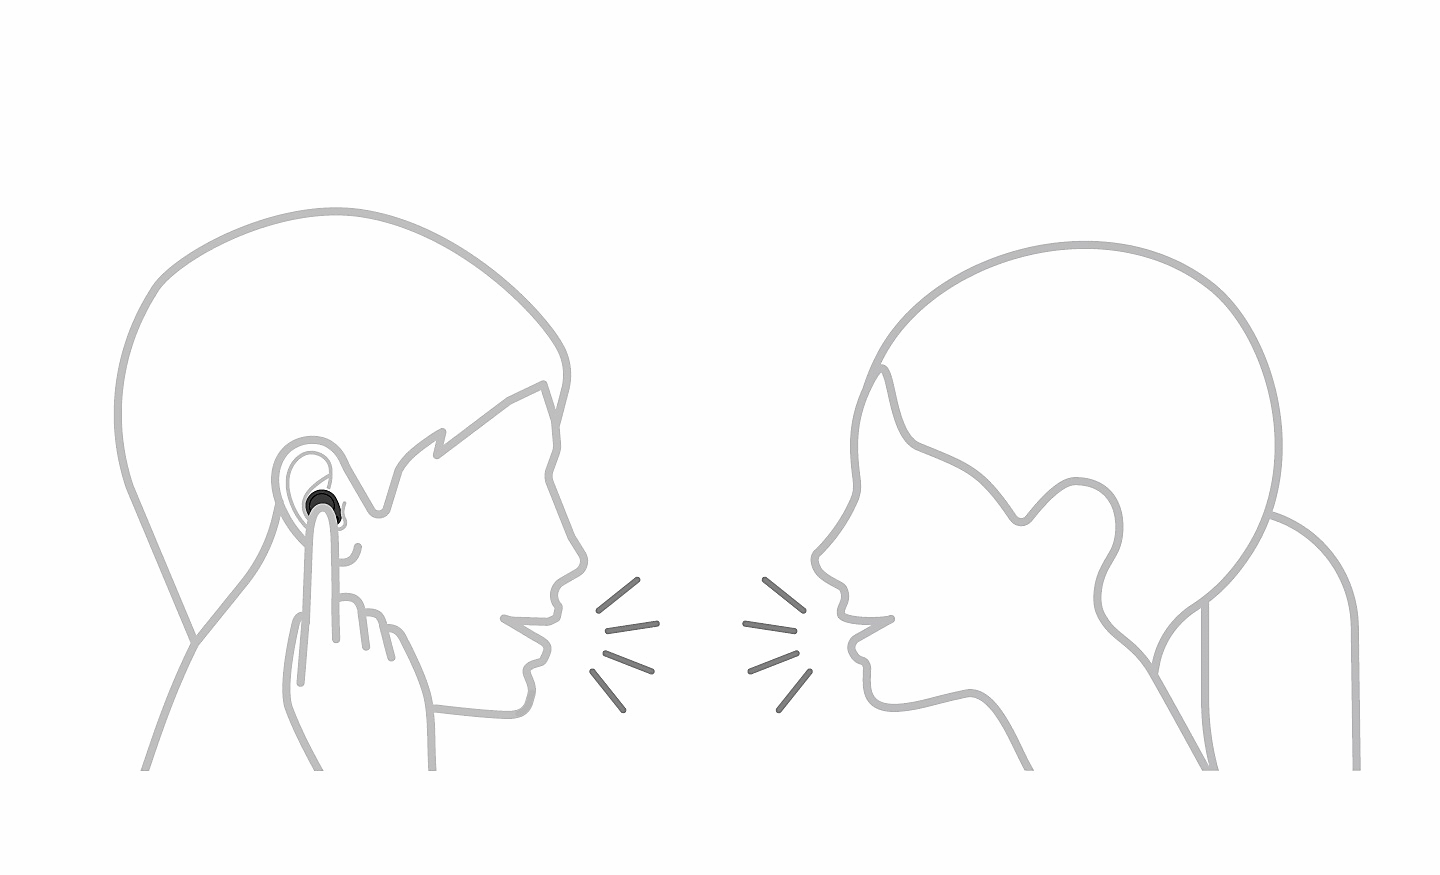 Dessin au trait de deux personnes qui parlent, l'une touchant son écouteur avec un doigt, avec une icône pause en haut à gauche